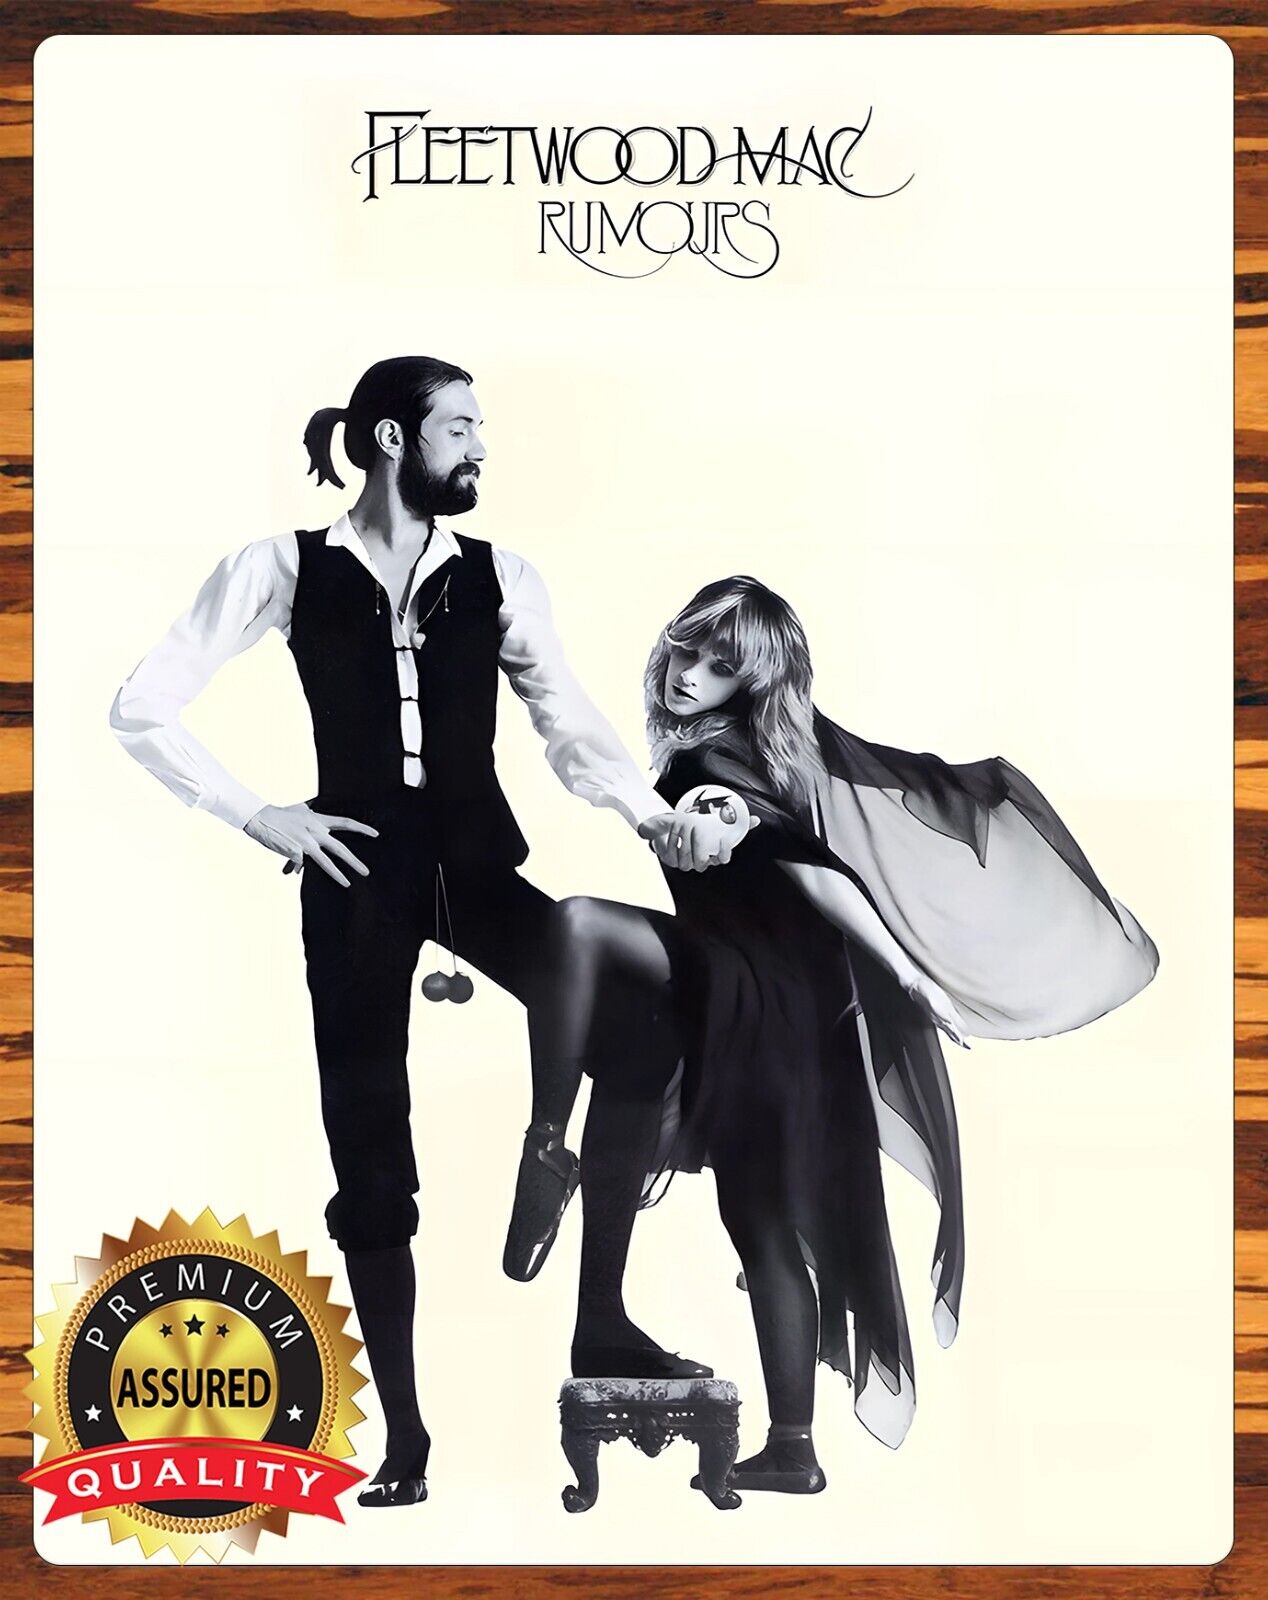 Fleetwood Mac - Rumours - Metal Sign 11 x 14